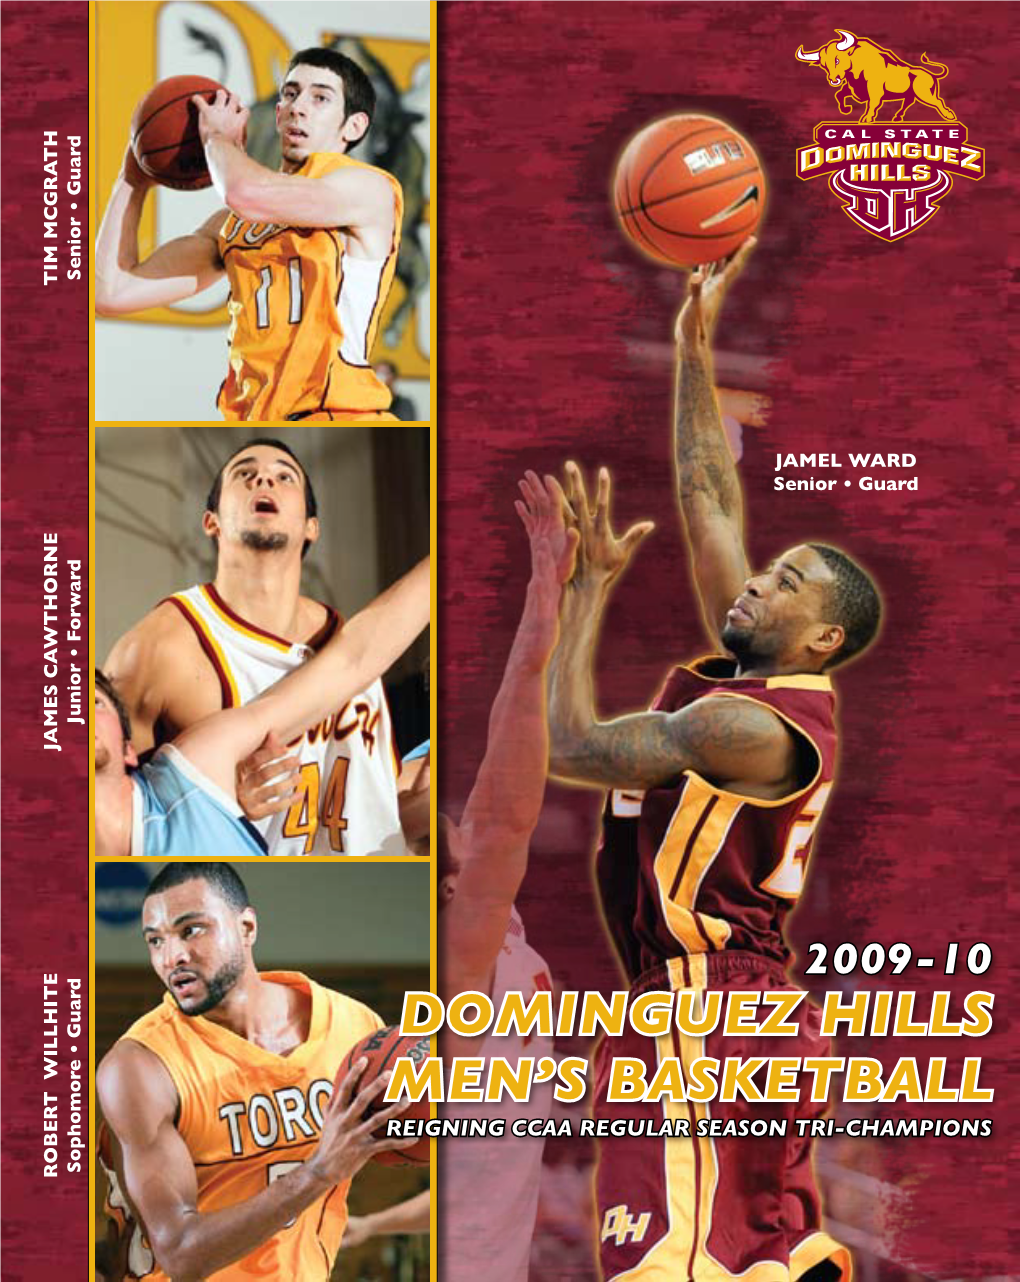 2009-10 Men's Basketball Media Guide